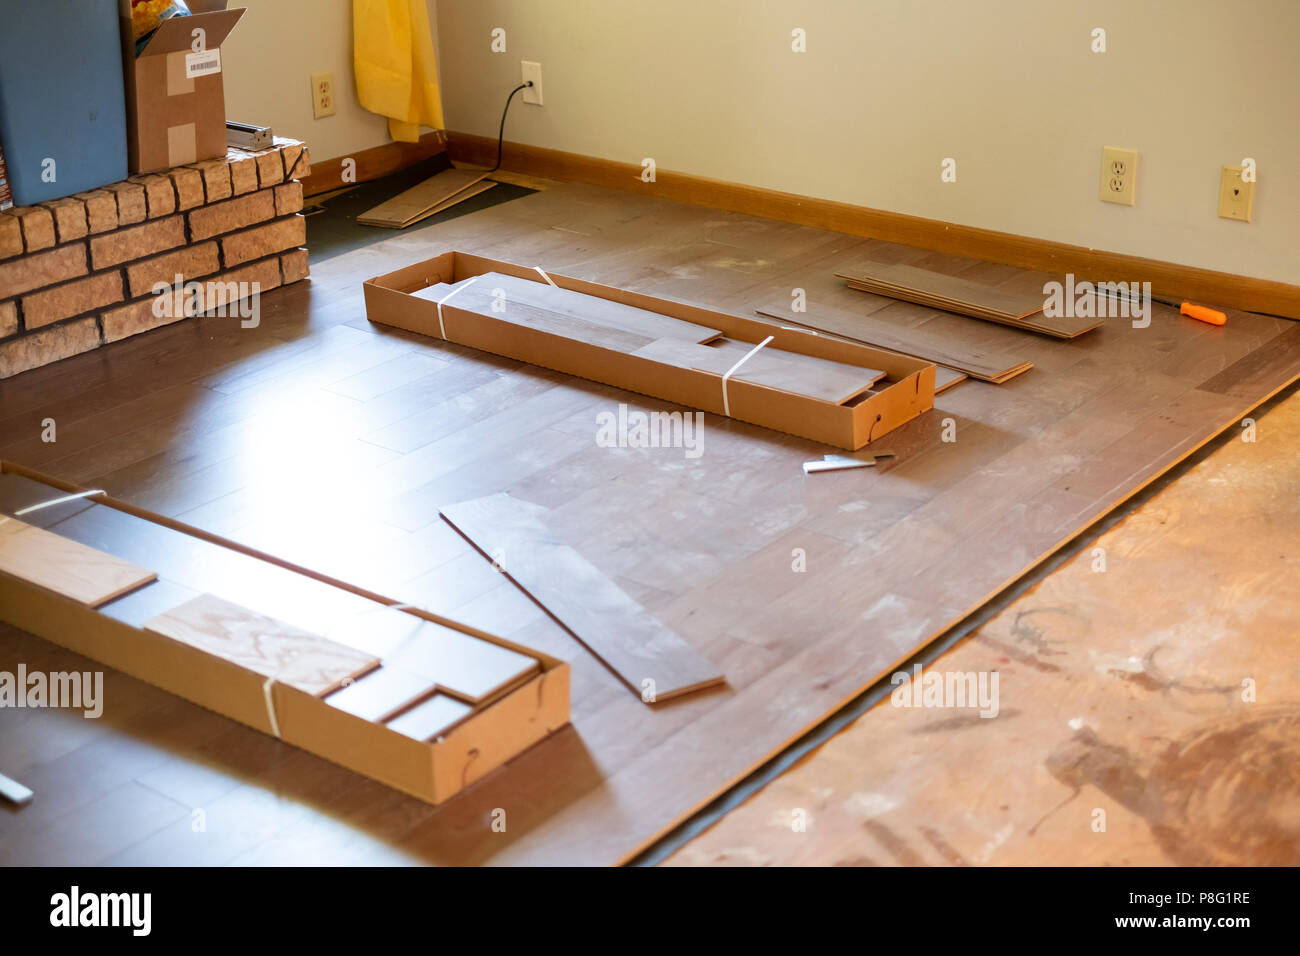 Schachteln von Engineered Wood Flooring installiert werden, während s Umbau home-Projekt. USA. Stockfoto